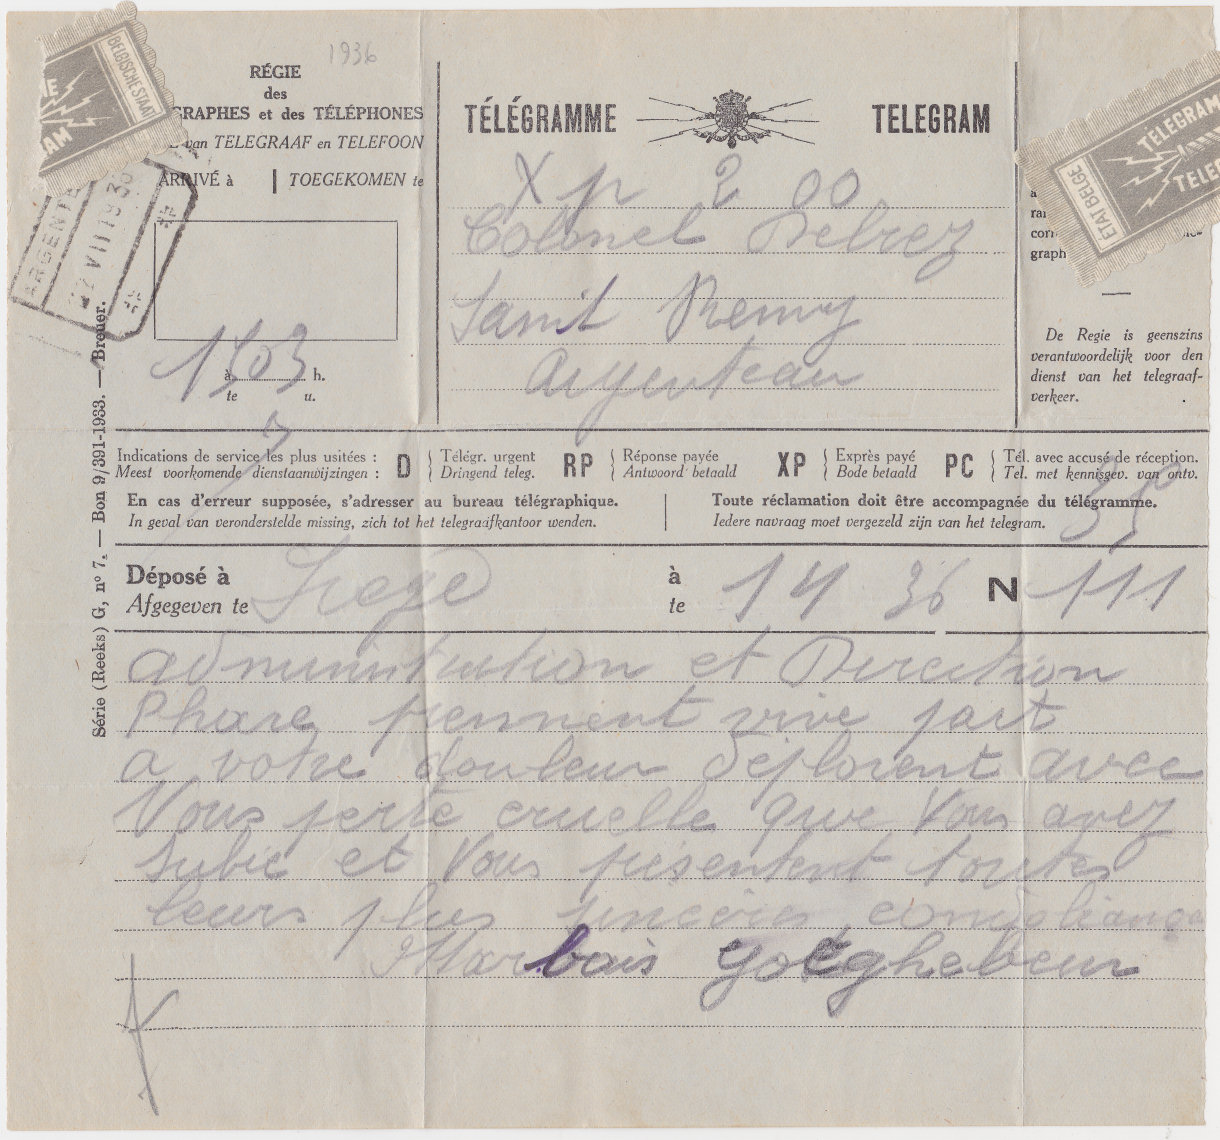 Telegram - 1933, used 1936